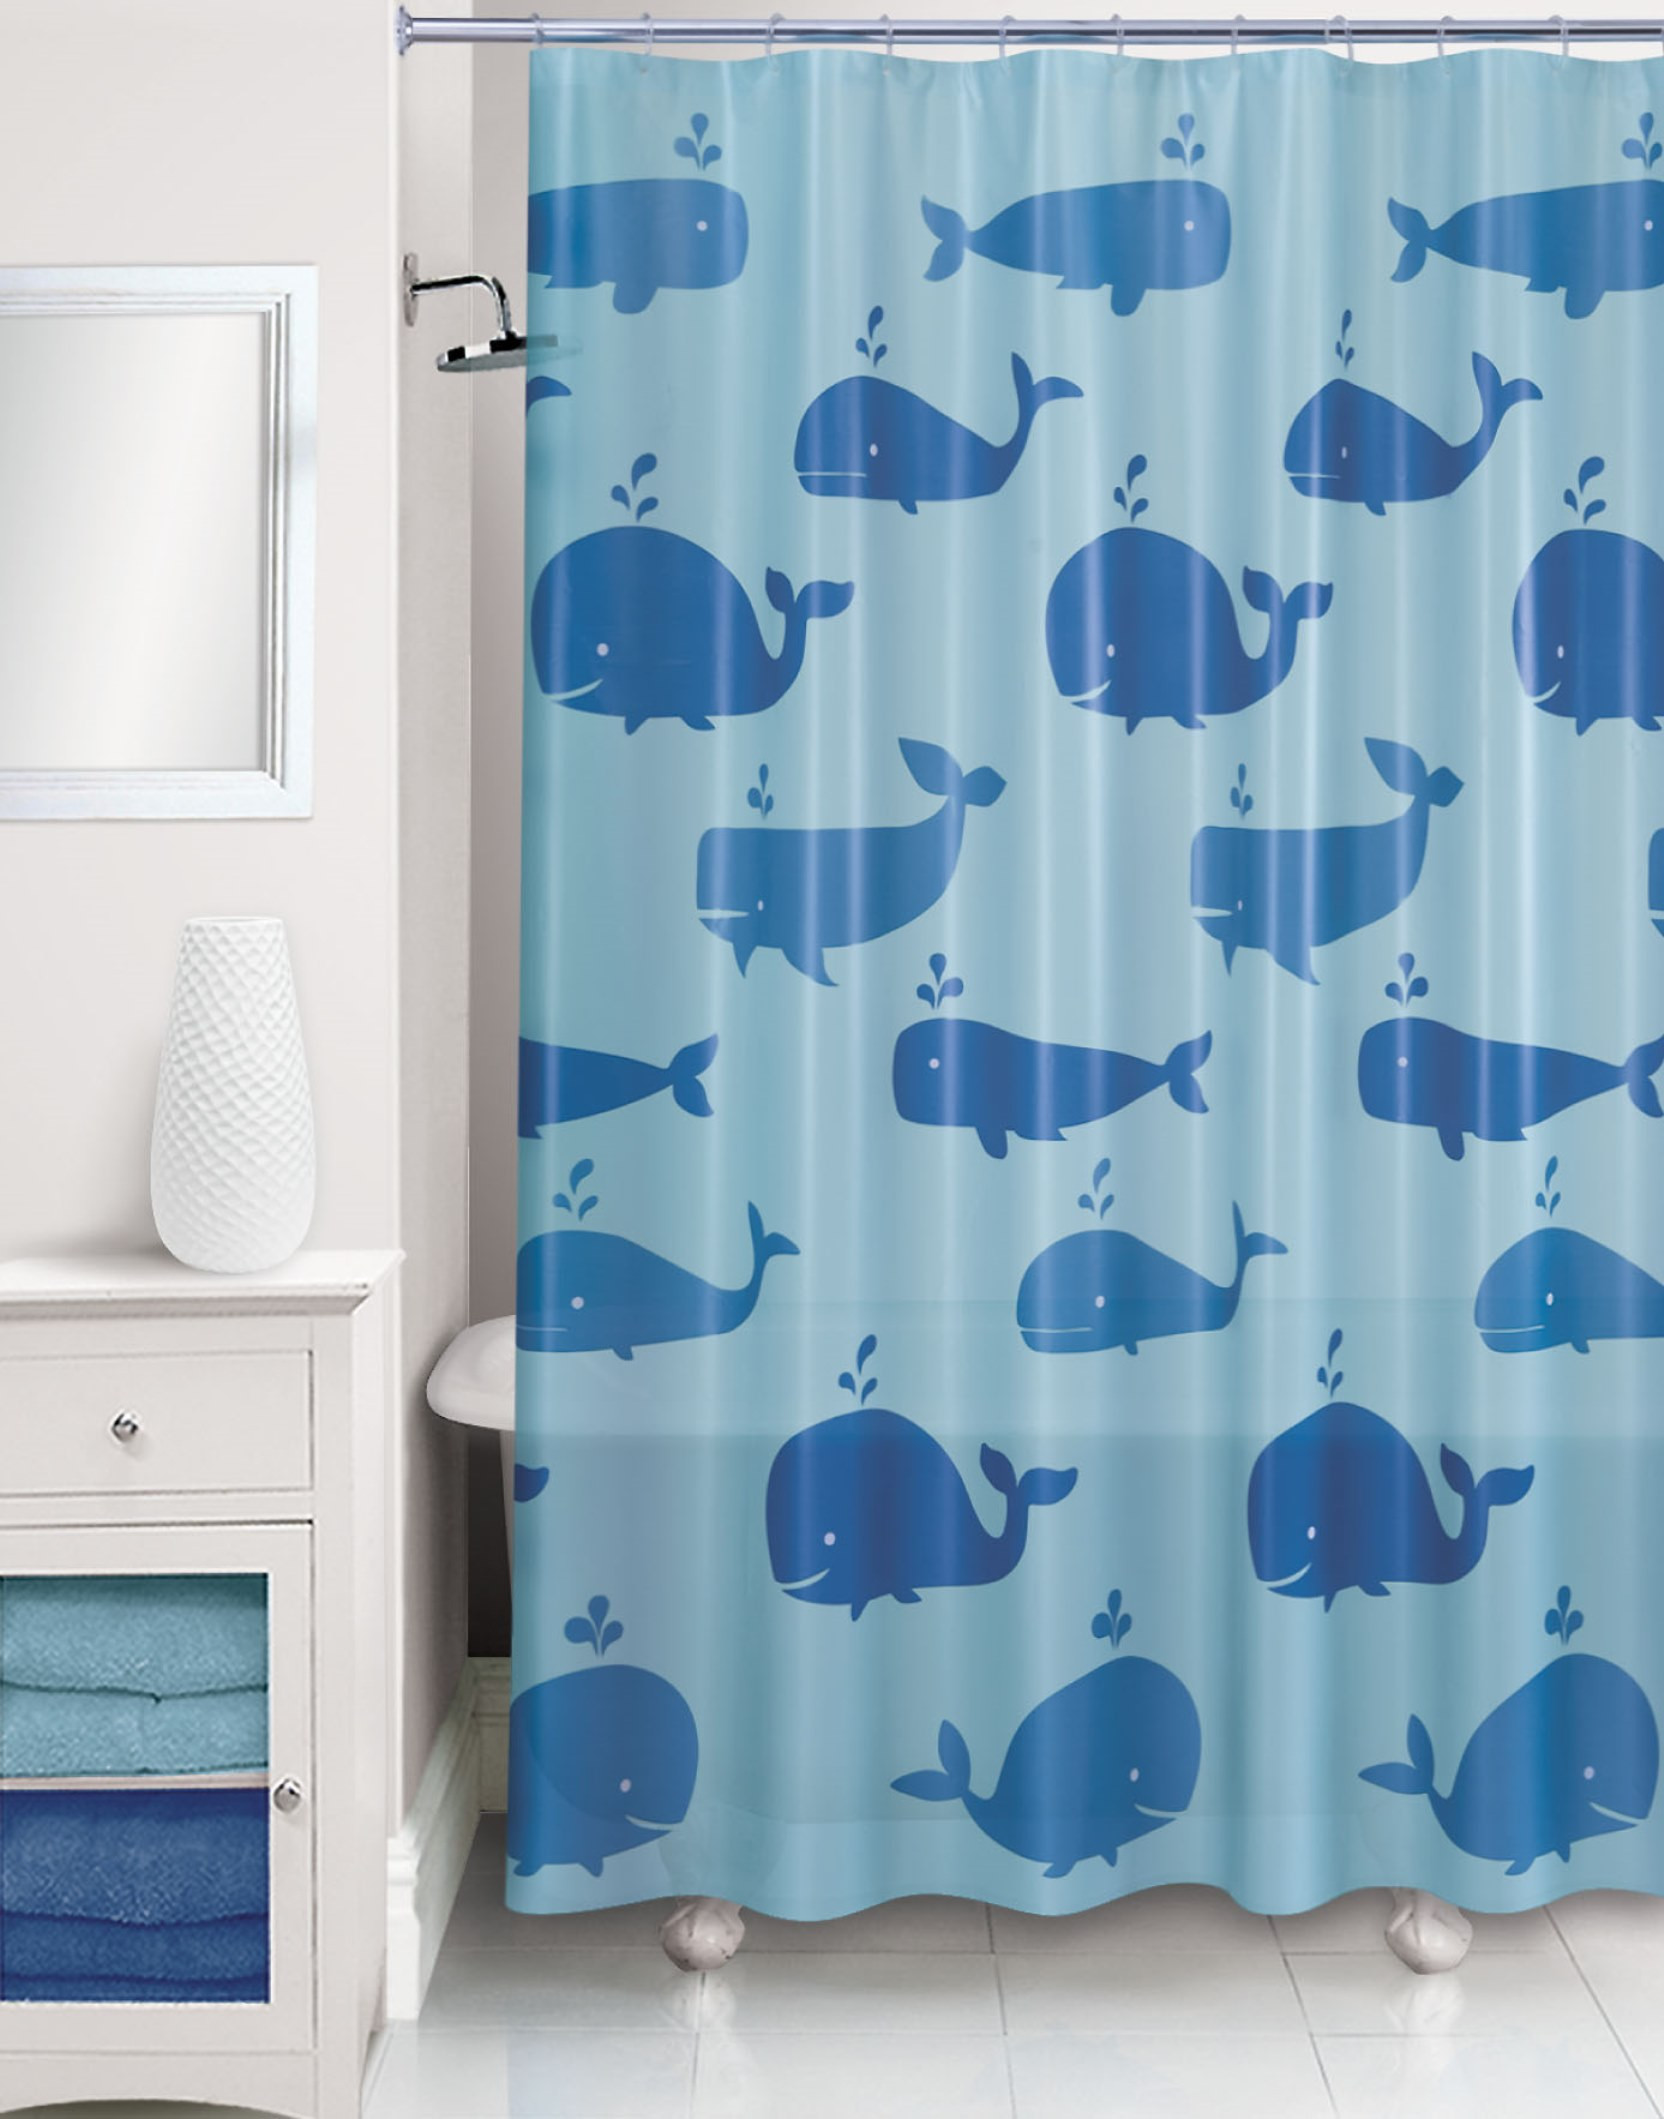 Whale Bathroom Decor
 Essential Home Whale Shower Curtain Home Bed & Bath